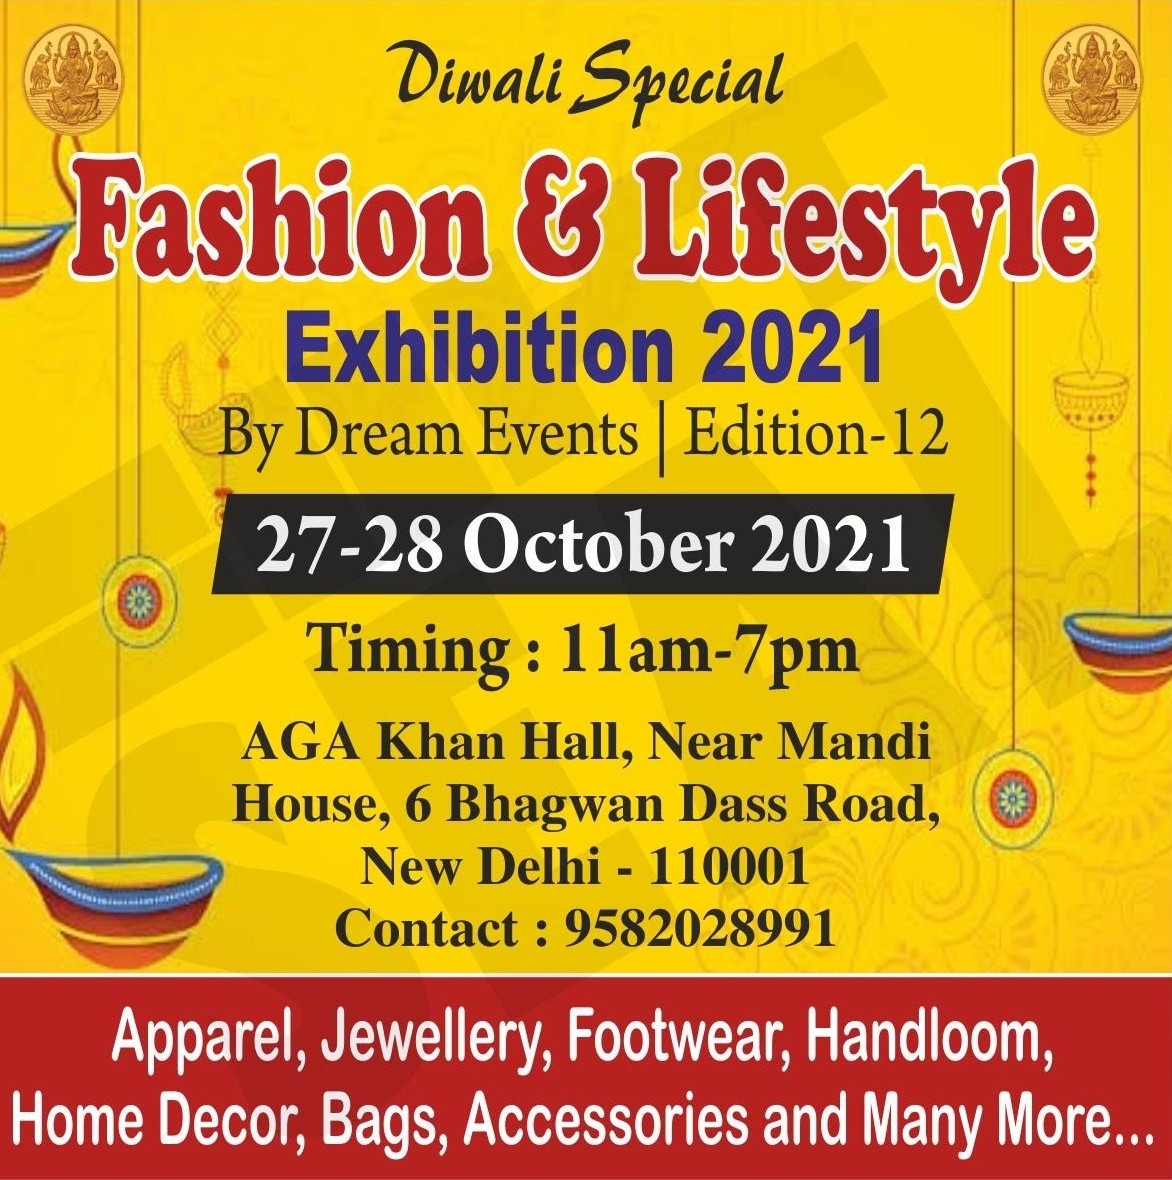 Fashion & Lifestyle Exhibition By Dream Events, New Delhi, Delhi, India